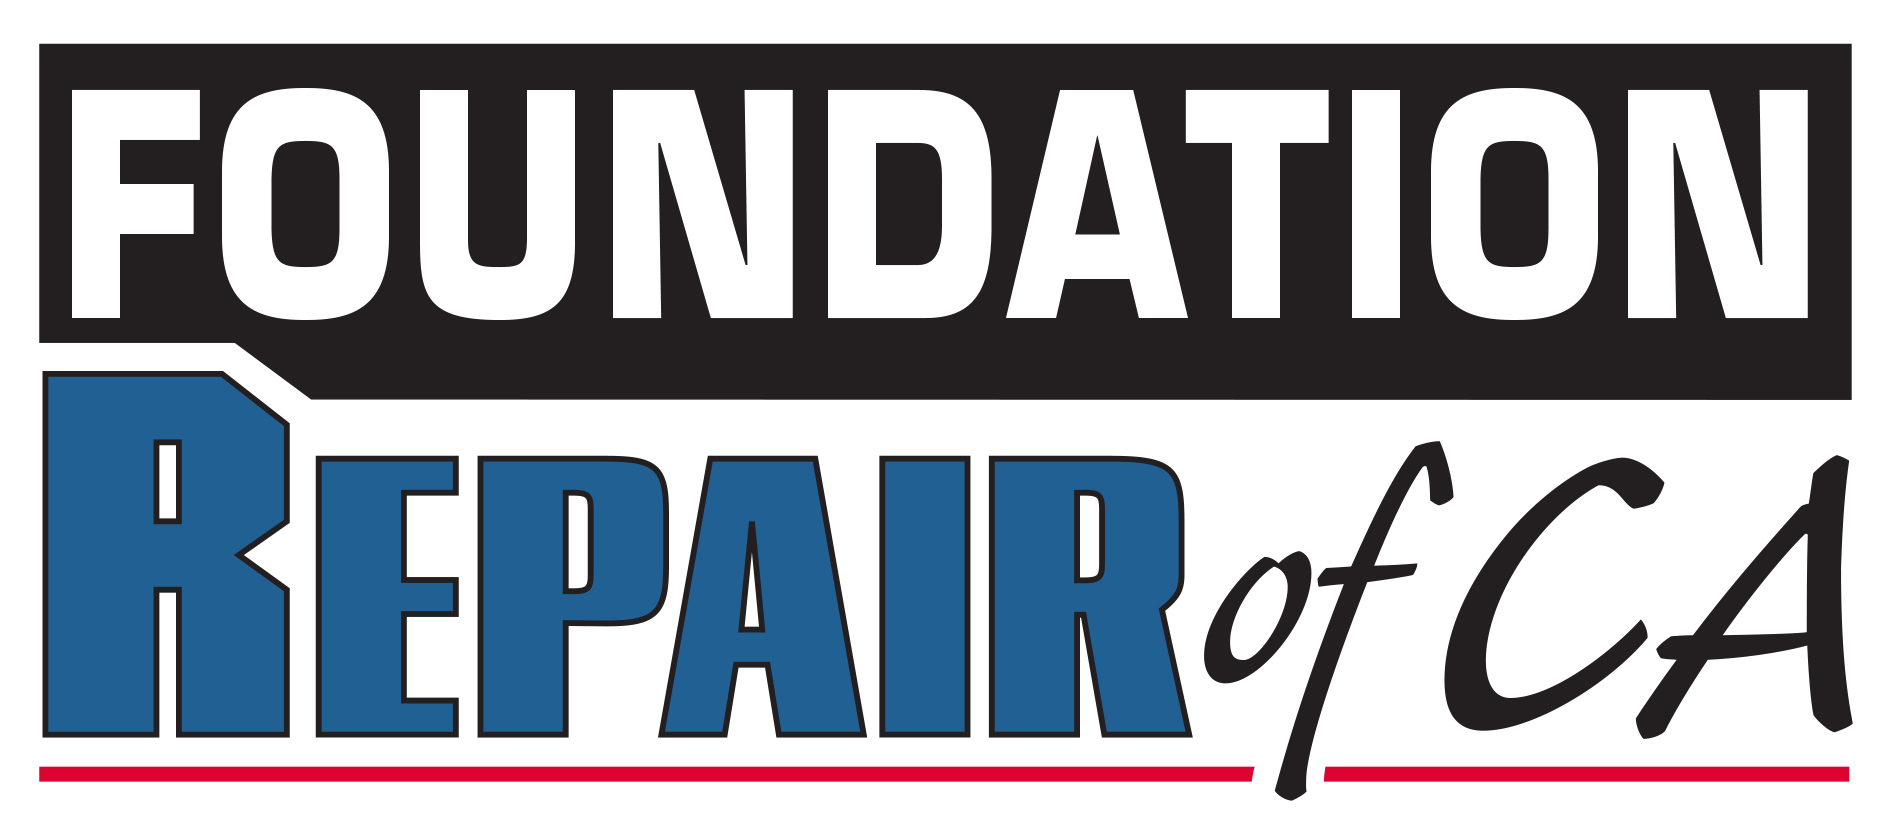 Foundation Repair of CA Logo